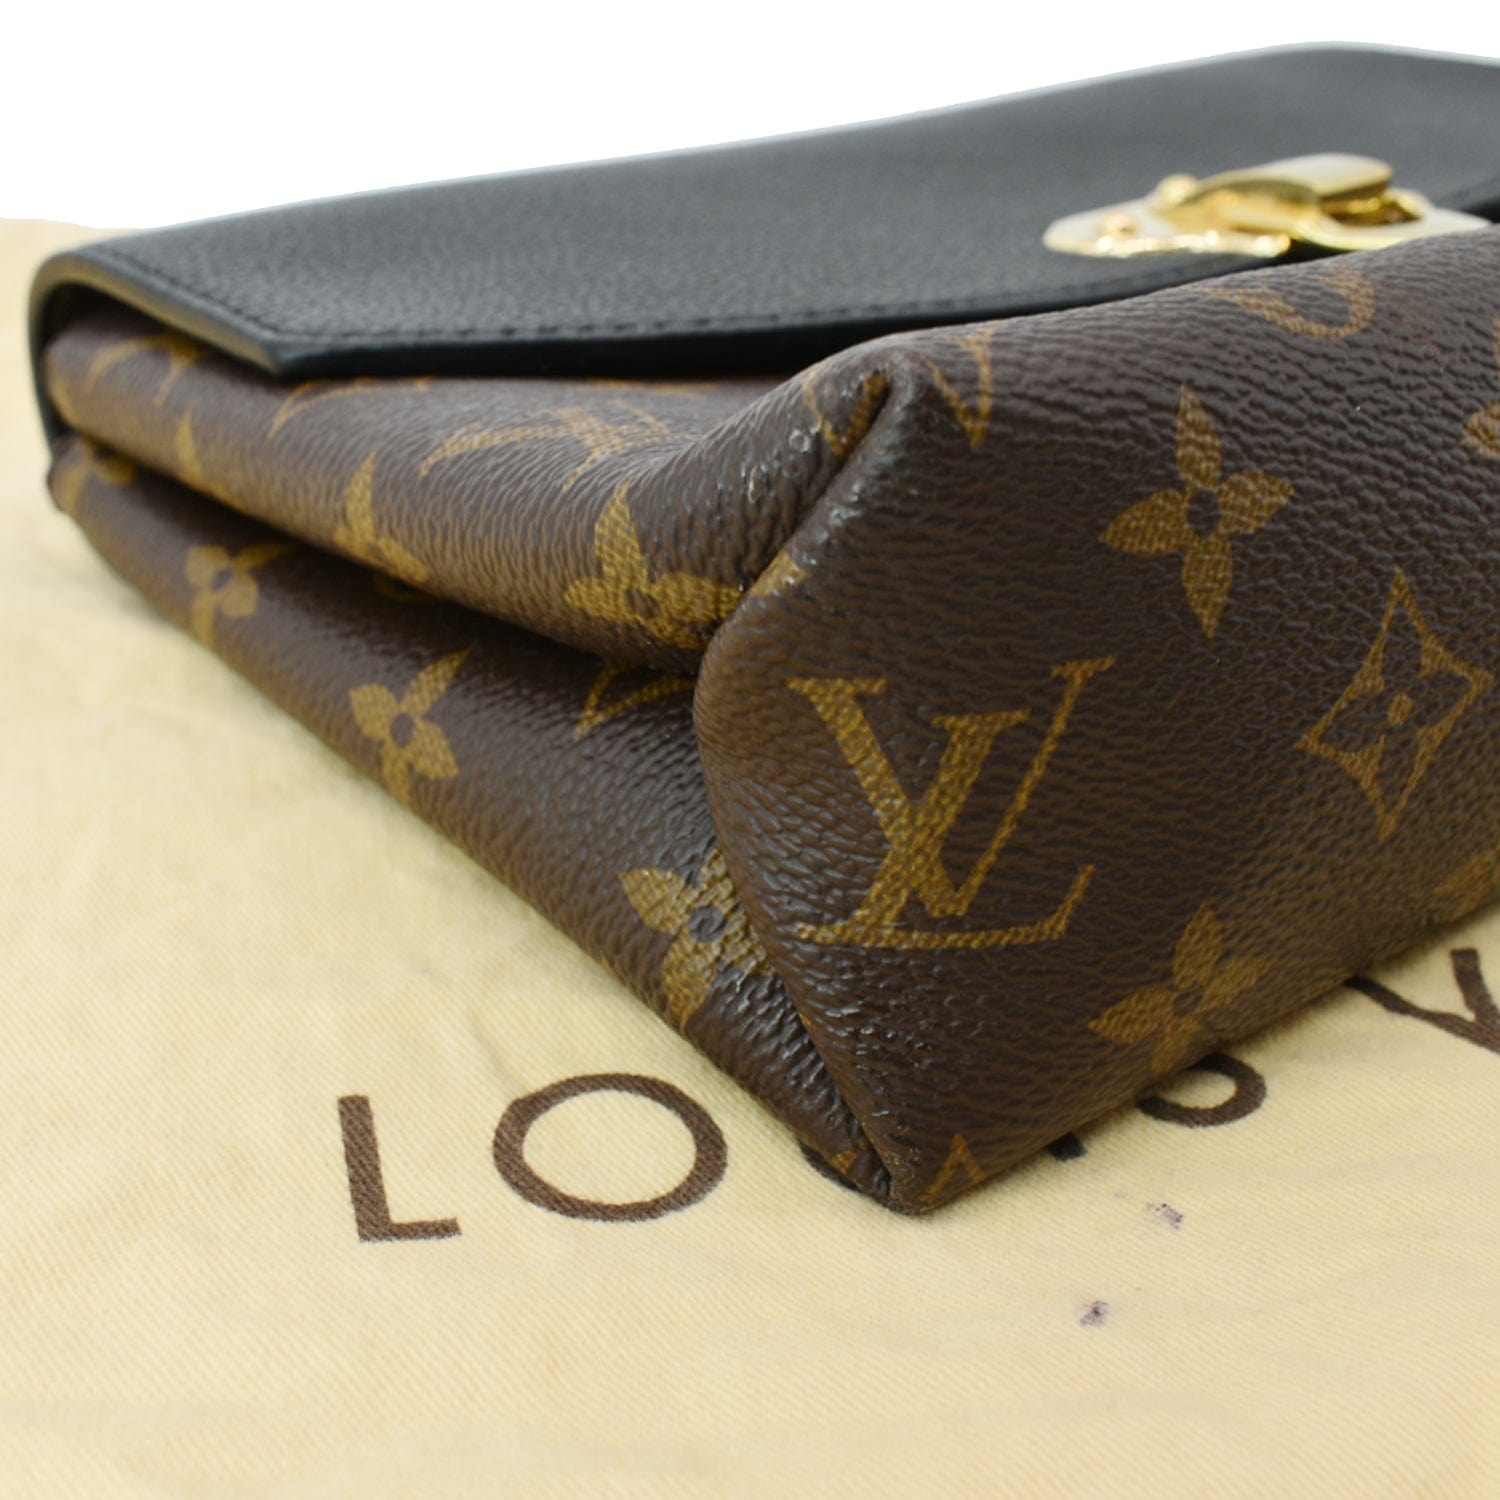 Saint Placide Louis Vuitton Handbags for Women - Vestiaire Collective